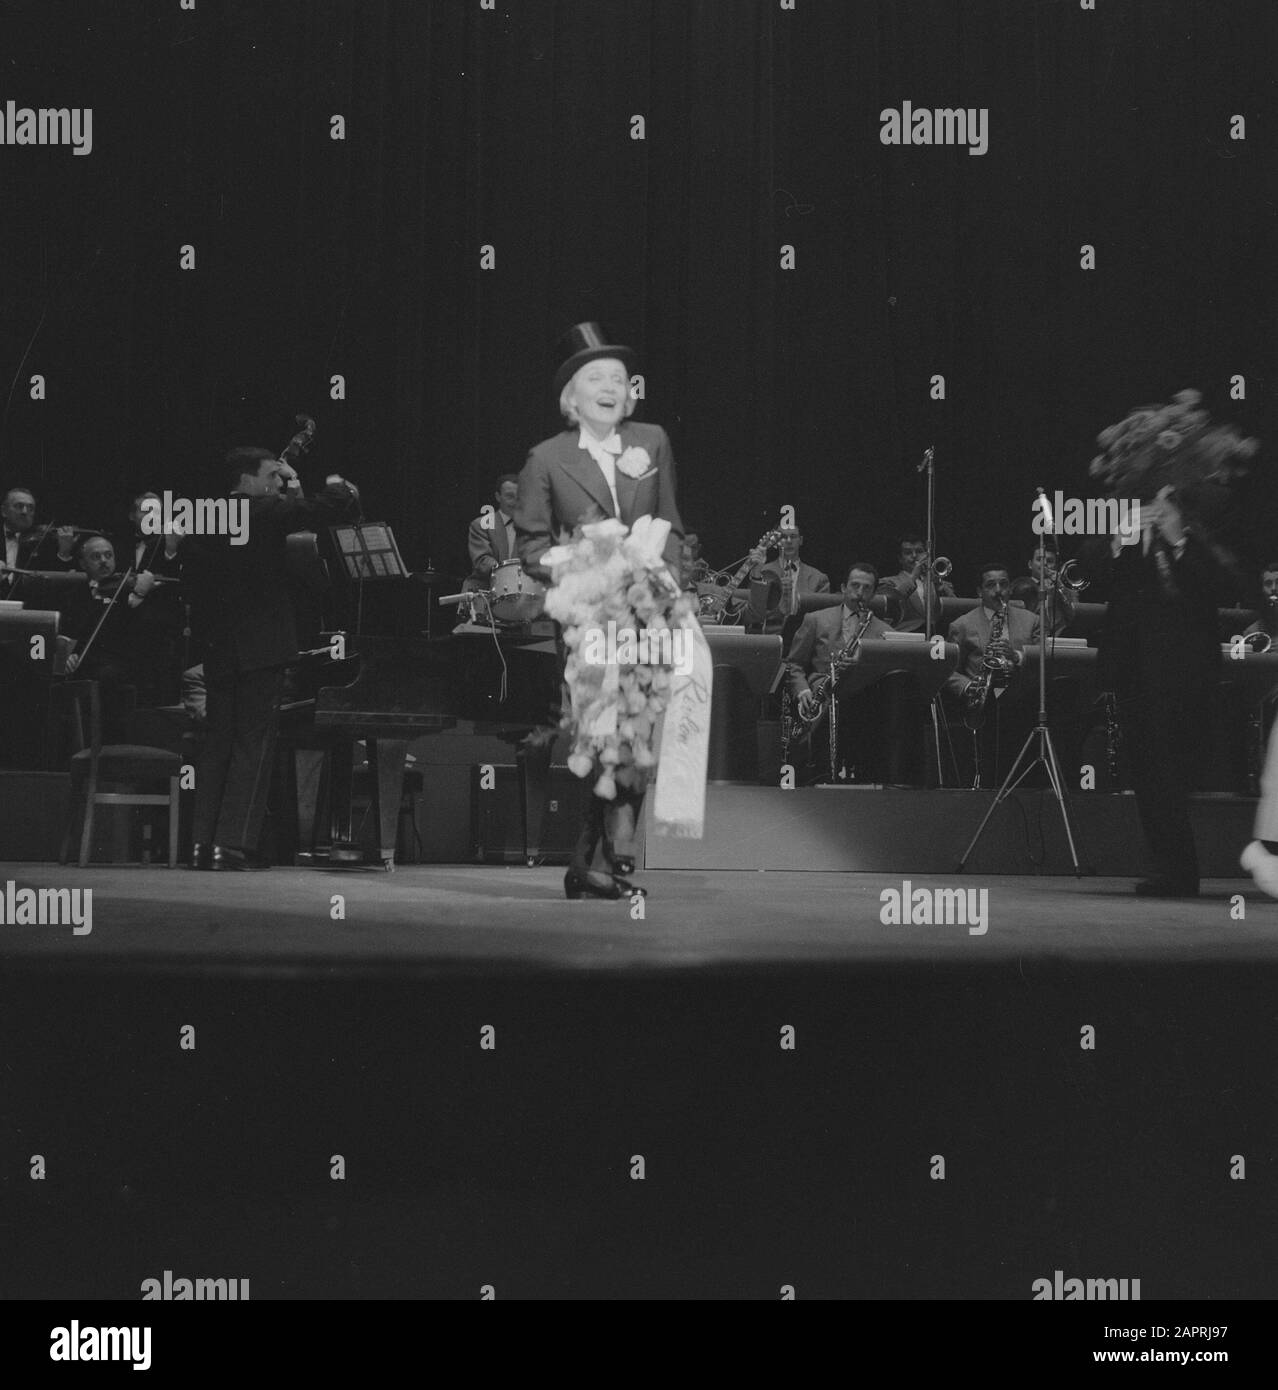 Représentation nocturne de Marlene Dietrich au Tuschinkitheater d'Amsterdam. Marlene Merci avec des fleurs pour les applaudissements Date: 28 mai 1960 lieu: Amsterdam, Noord-Holland mots clés: Actrices, stars du cinéma, théâtre, spectacles, chanteurs Nom personnel: Dietrich Marlene Banque D'Images